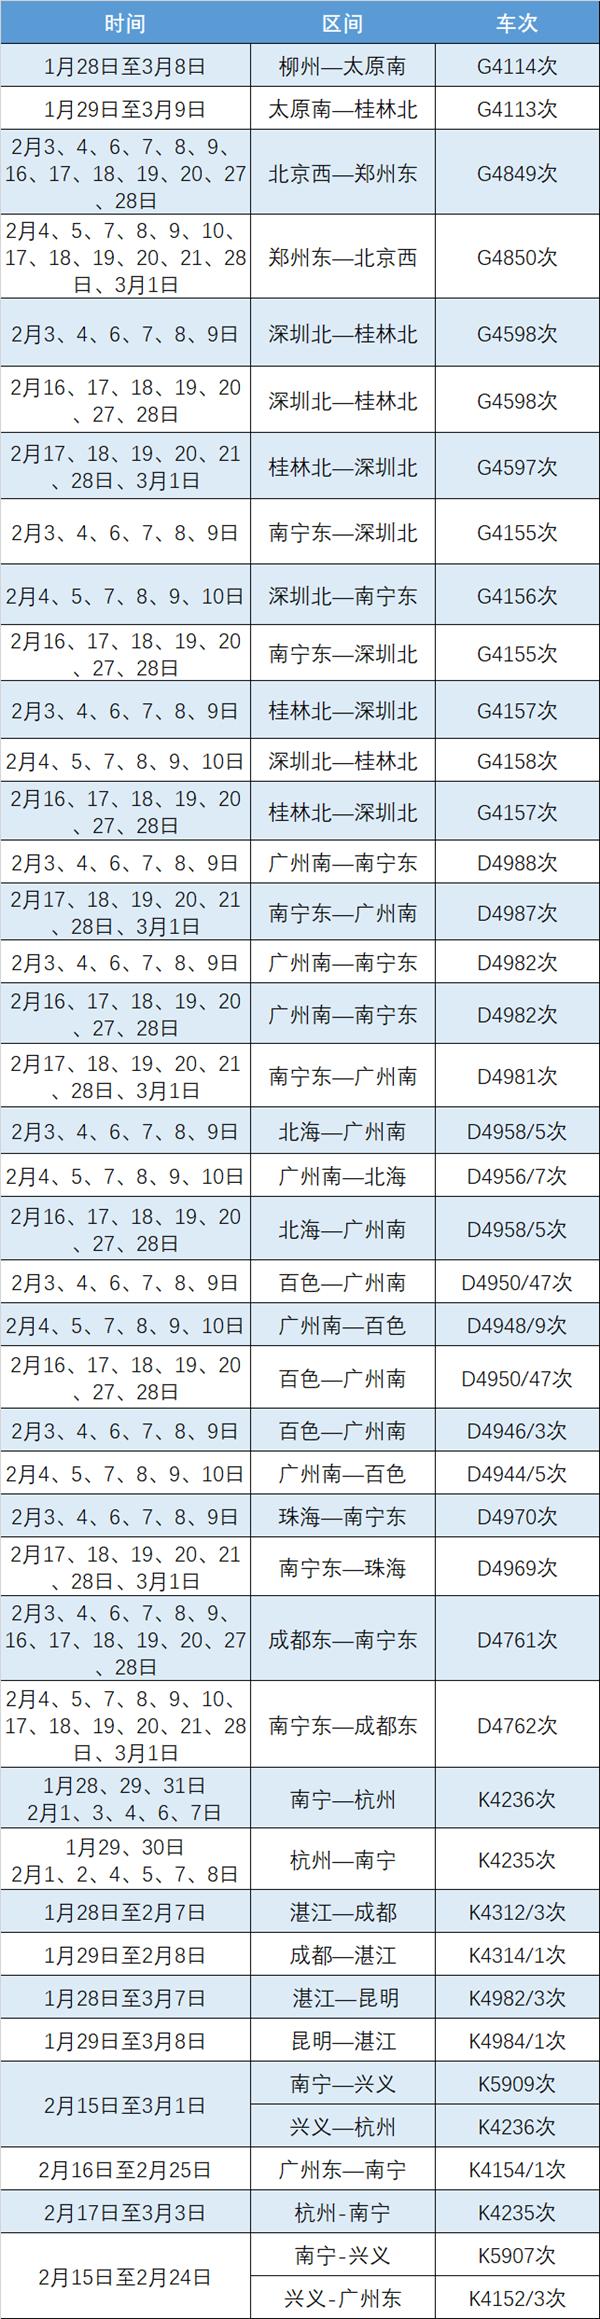 2021广西春运新增列车时刻表